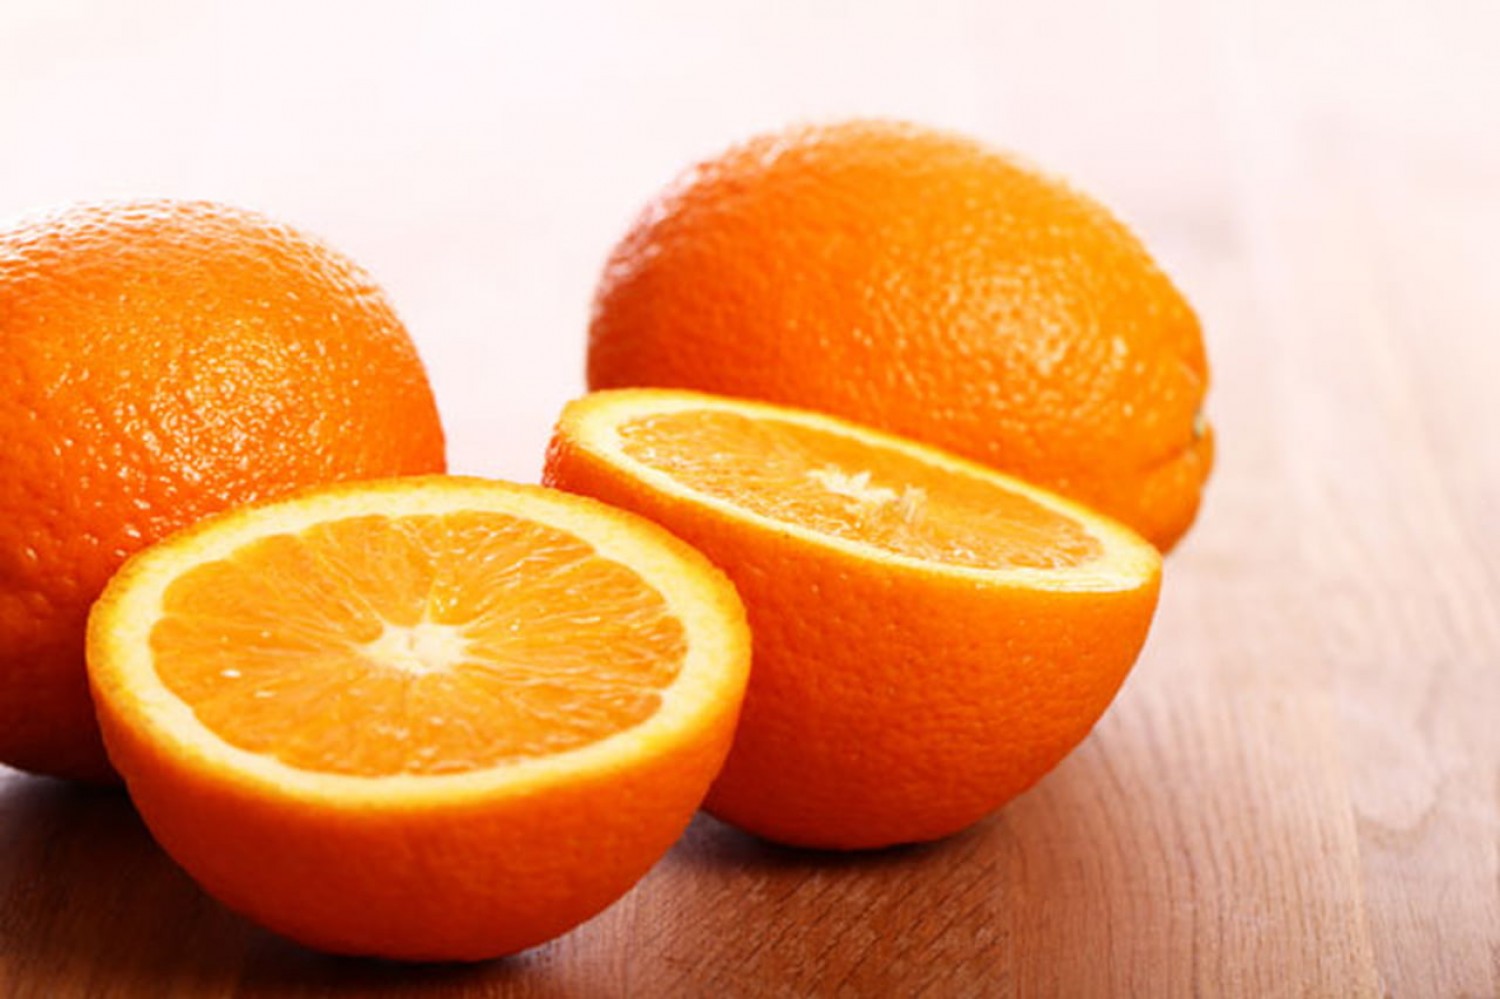 البرتقال أفضل مصدر لفيتامين C والمنتجات العضوية أكثر فائدة.. 7 معلومات كاذبة عن الفاكهة